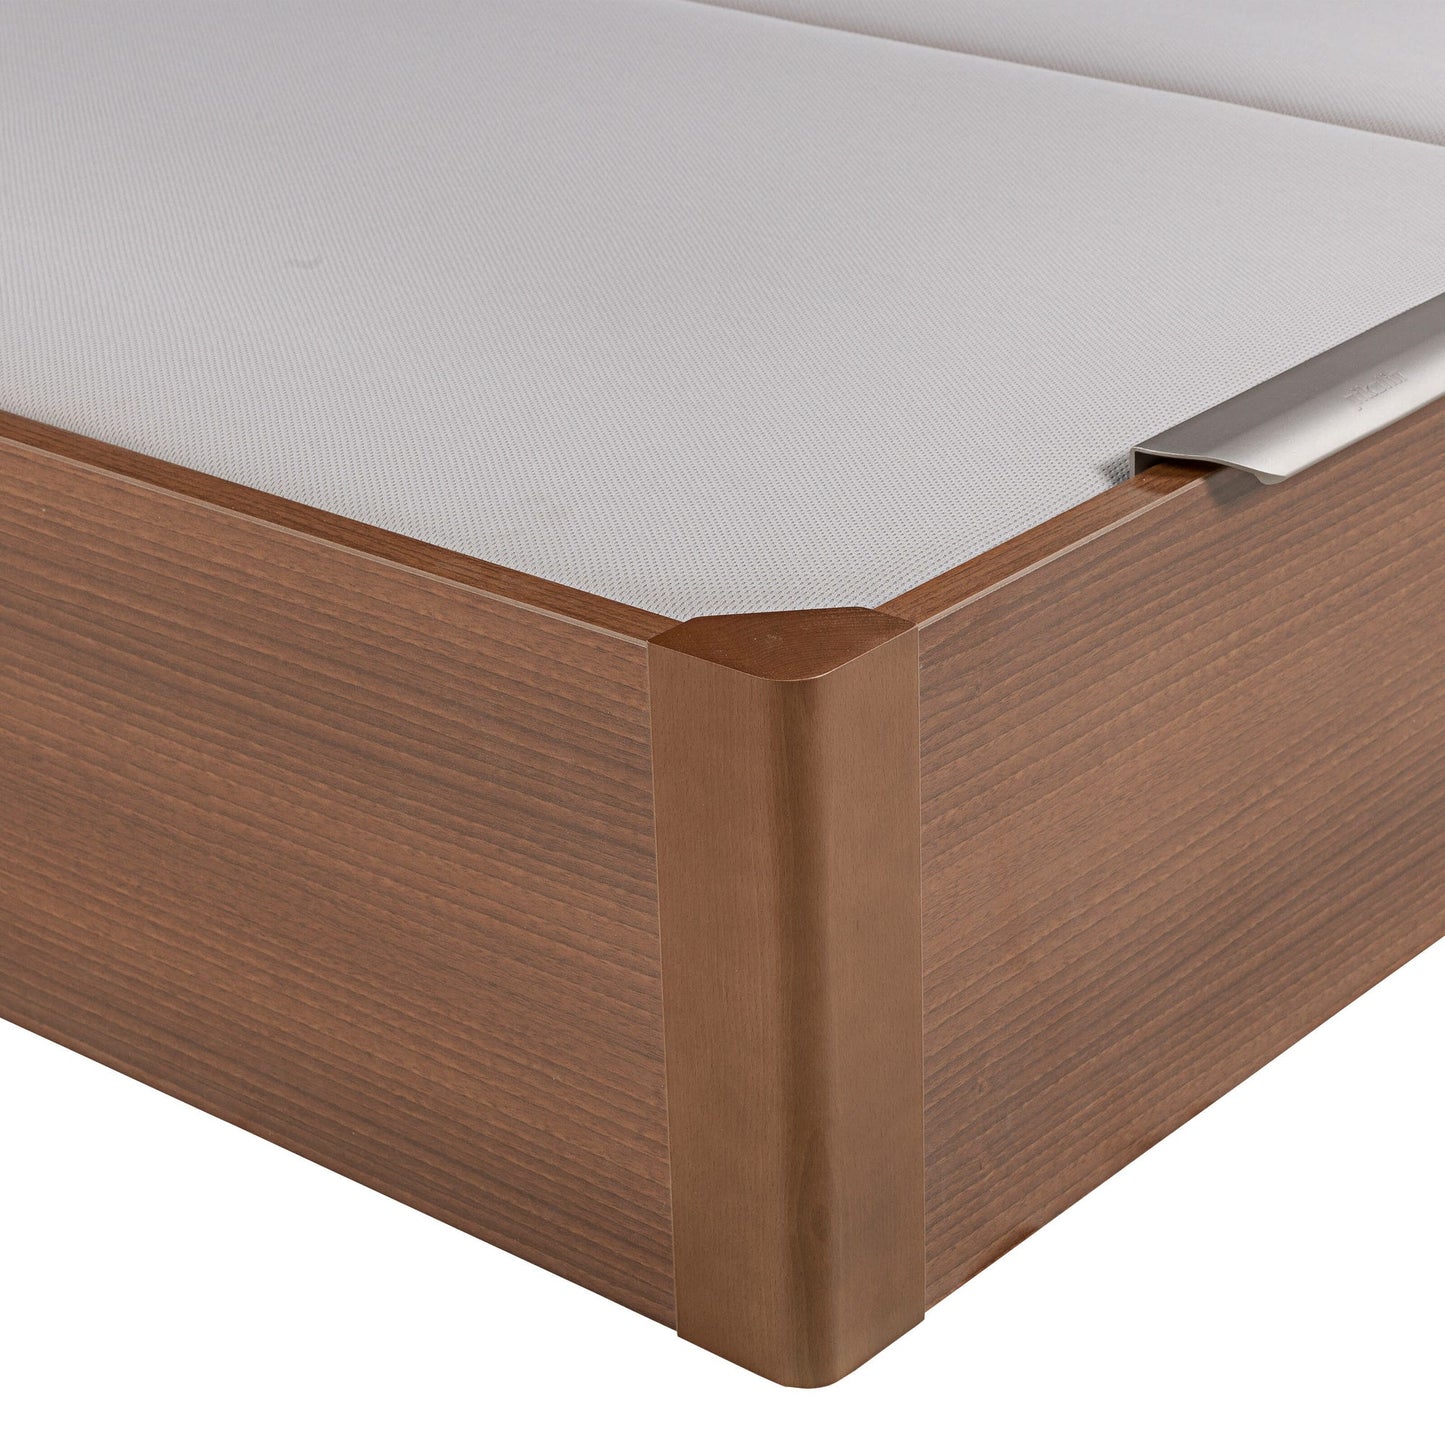 Canapé abatible de madera de tapa doble de color cerezo - DESIGN - 180x200